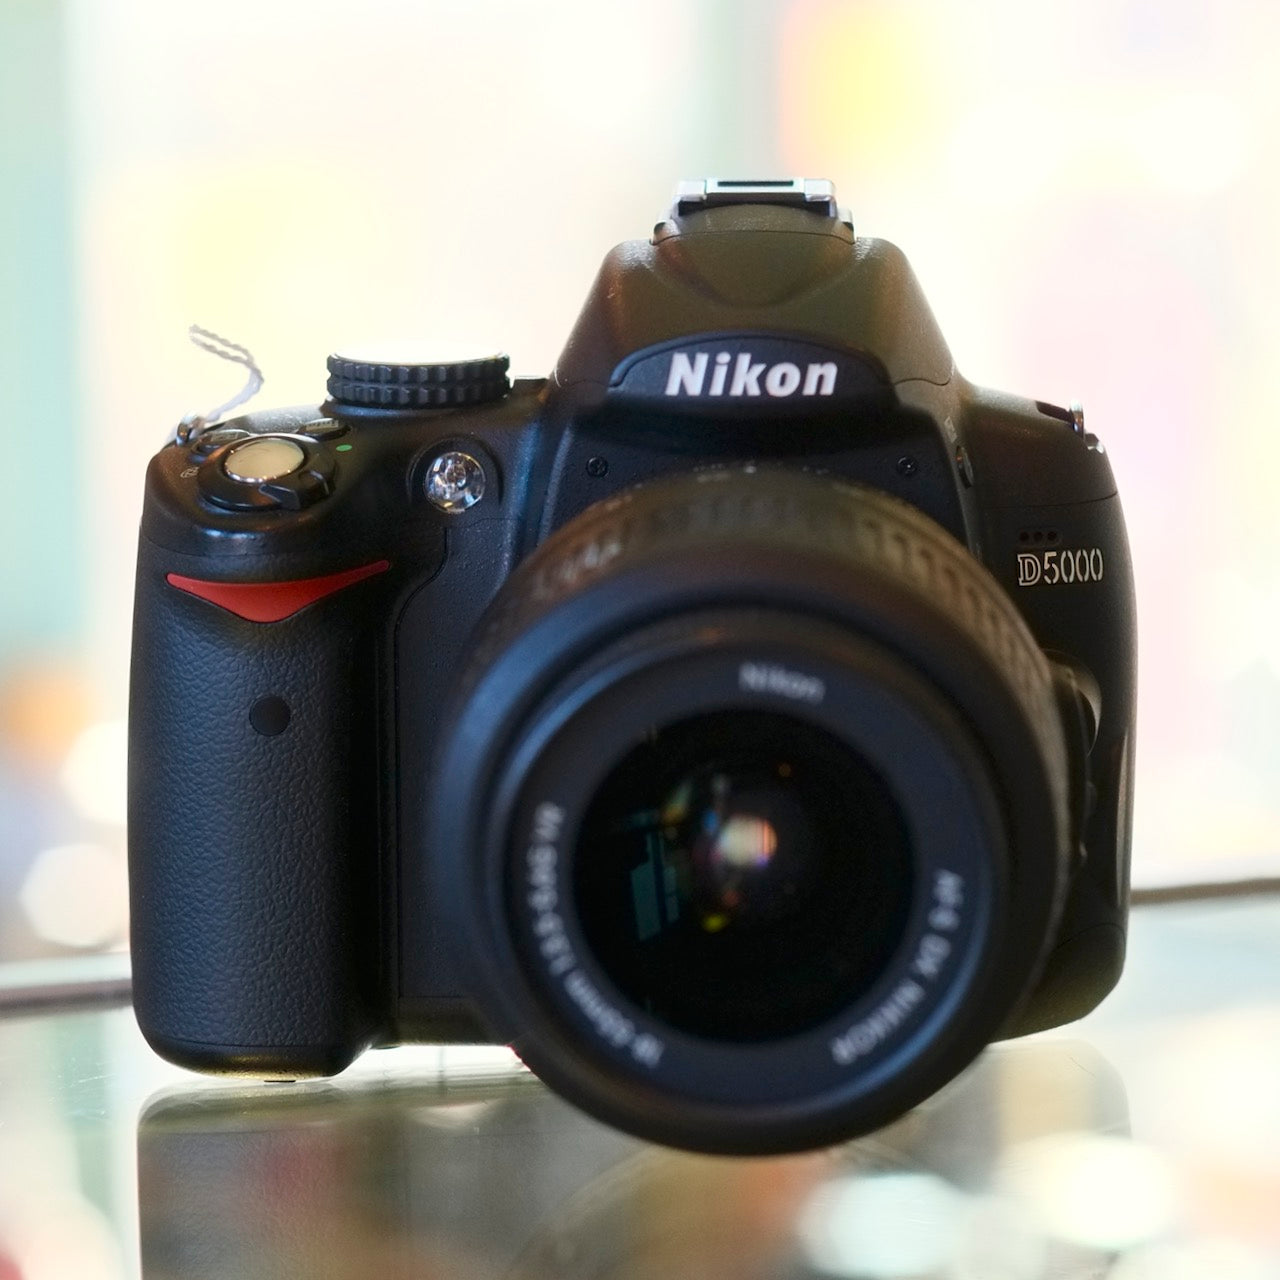 Nikon D5000 with 18-55mm f3.5-4.5 VR Nikkor